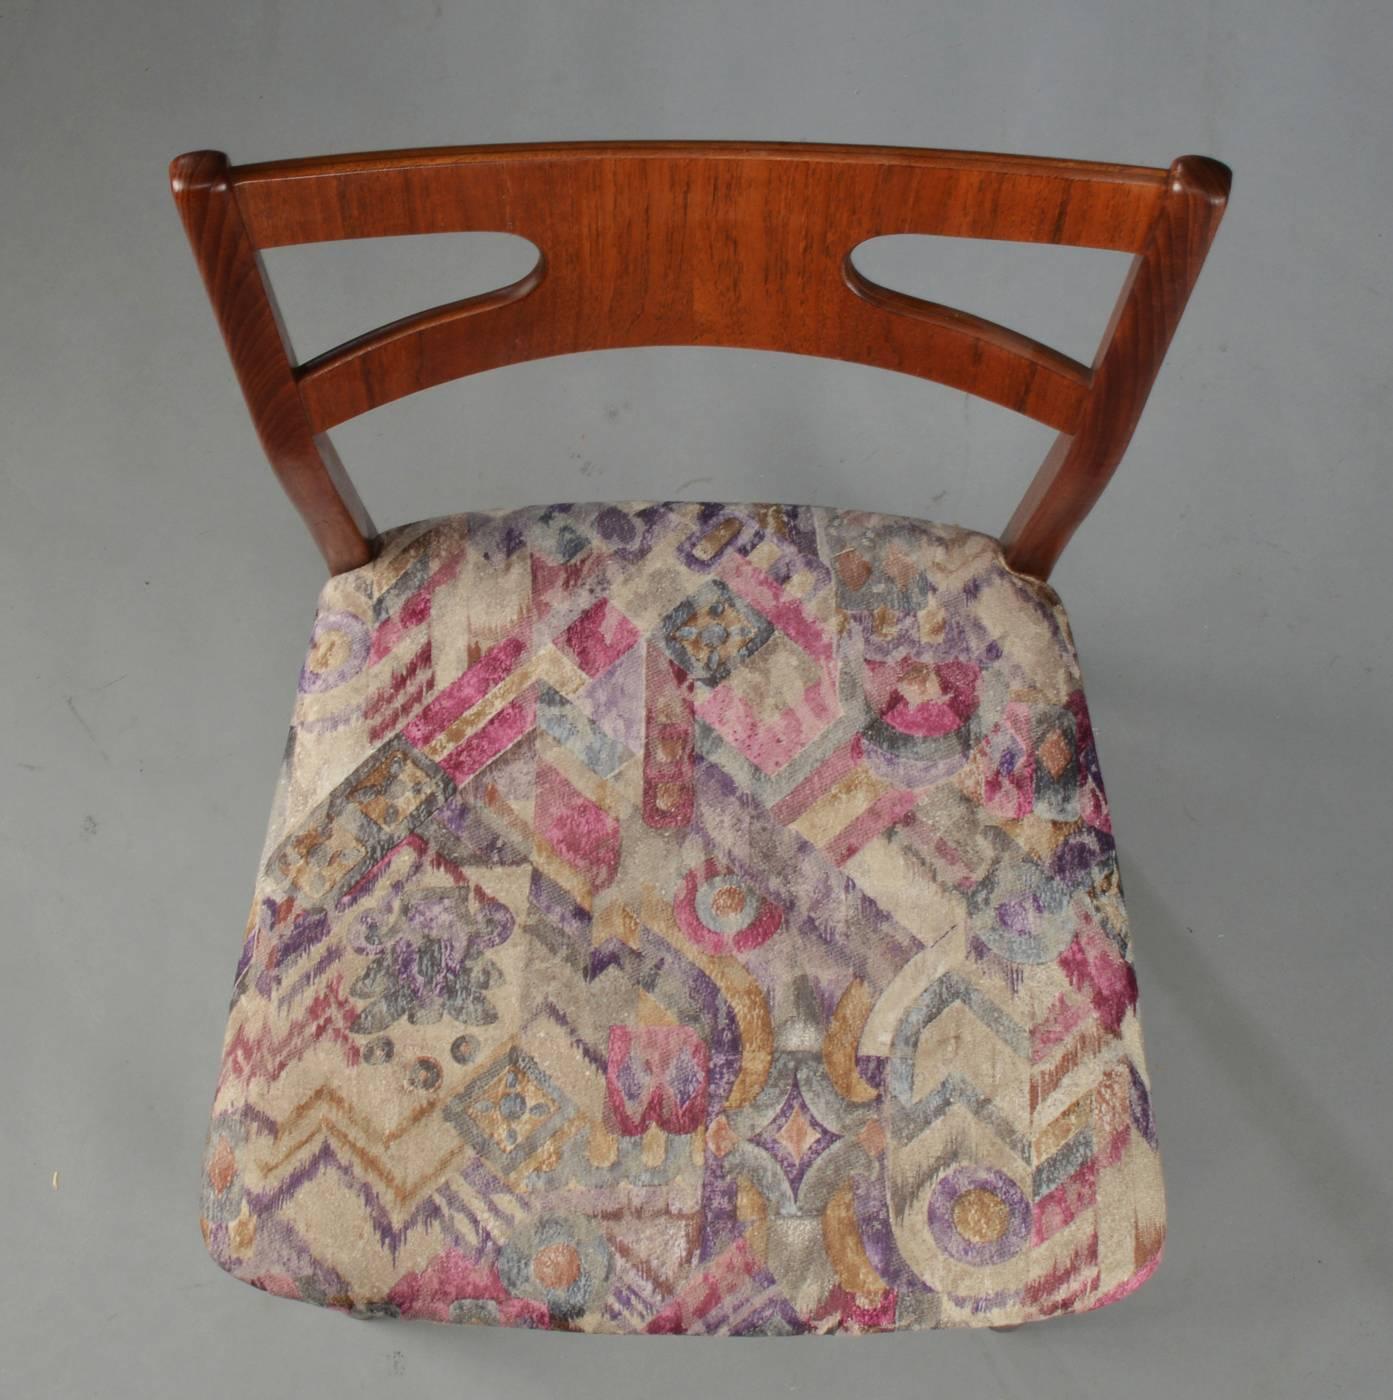 Cadre en teck avec assise et dossier rembourrés dans l'esprit des chaises CH29 de Hans Wegner, fabriquées au Danemark dans les années 1960. 
Très bon état d'origine sur un placage réparé, la tapisserie doit être renouvelée (par chaise 200USD +